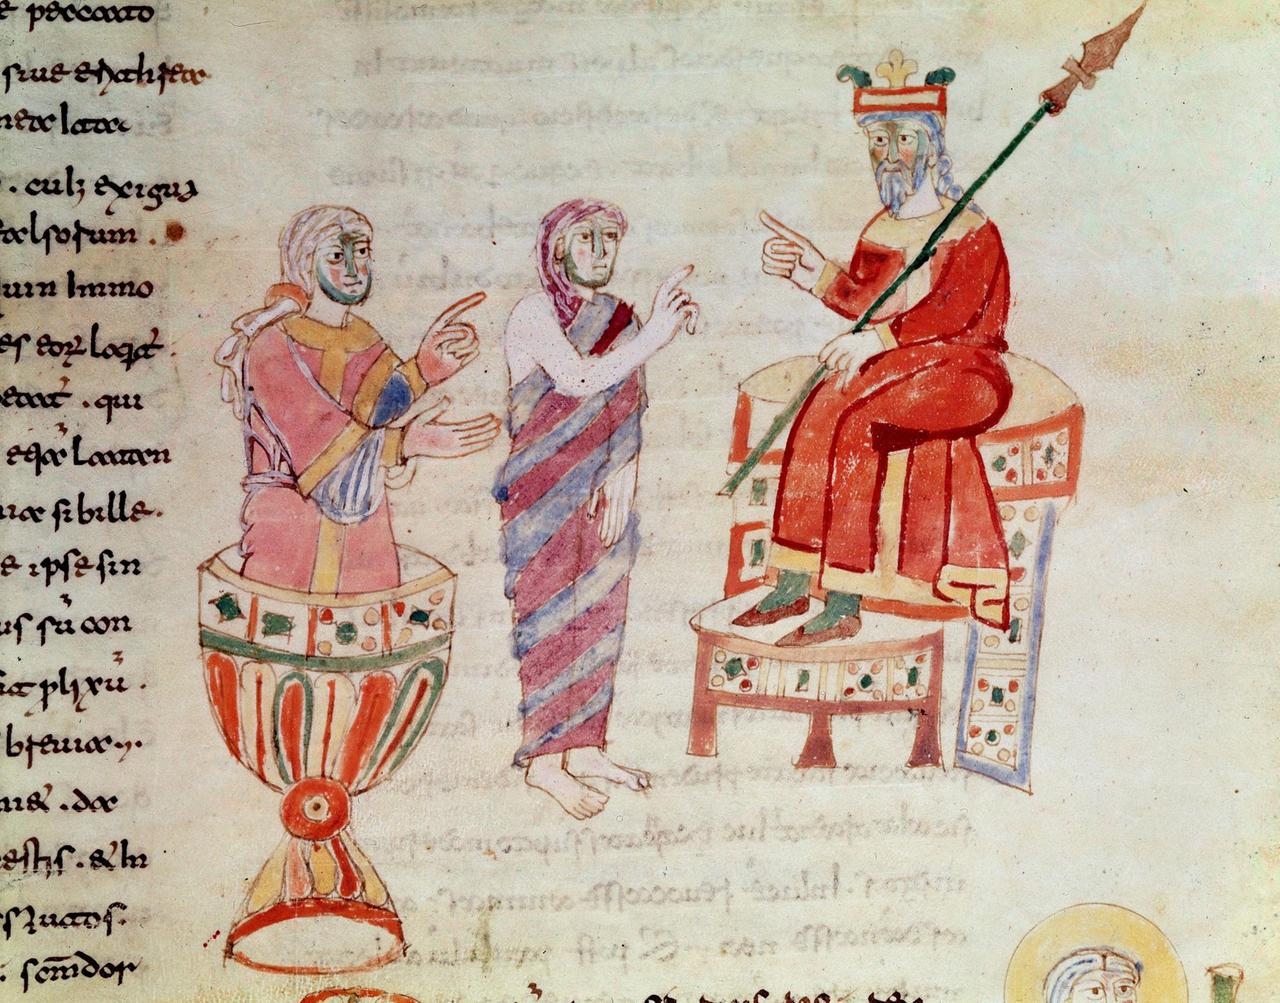 Darstellung von Zarathushtra in einer Handschrift (De Universo von Rabanus Maurus Magnentius) aus dem 9. Jahrhundert. Zu sehen ist Zarathushtra, der zwei Orakel konsultiert.